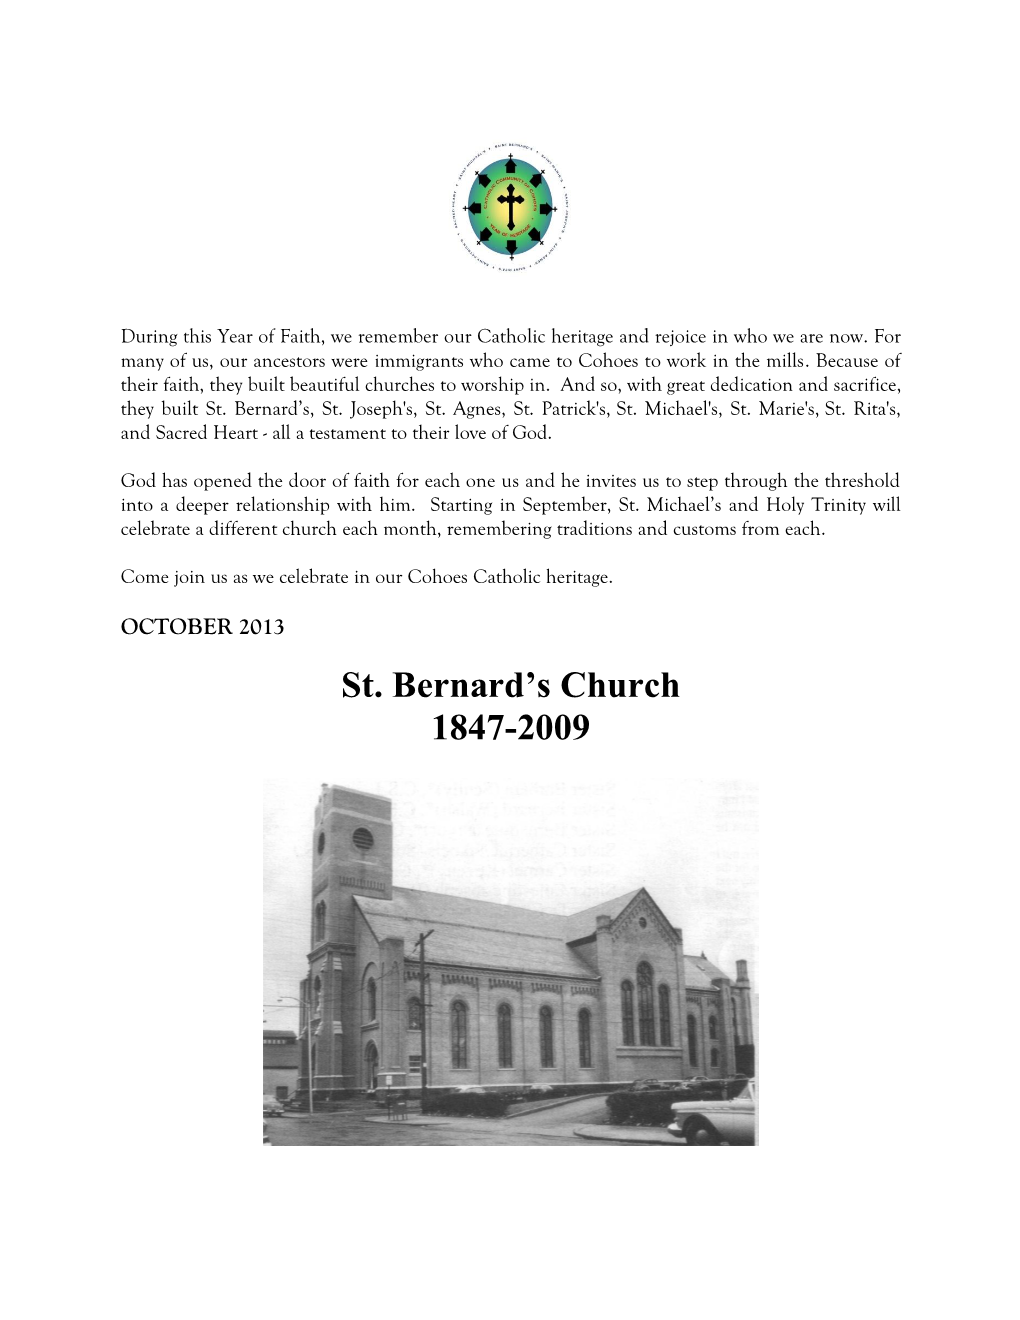 St. Bernard's Church 1847-2009